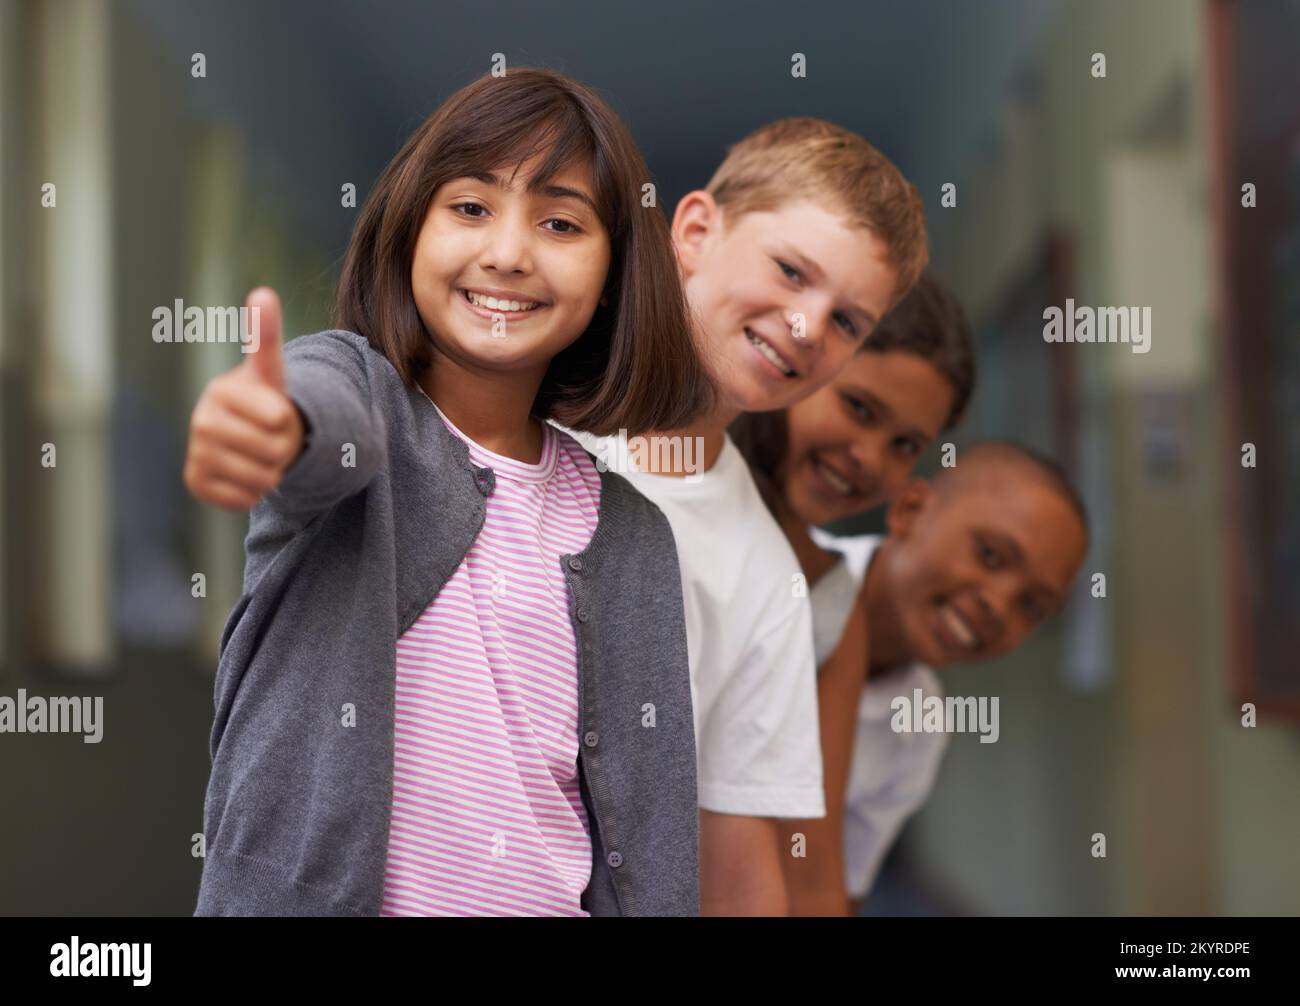 Sentirsi positivi per la scuola. Ritratto di una giovane ragazza che ti dà i pollici-up con i suoi amici dietro di lei. Foto Stock